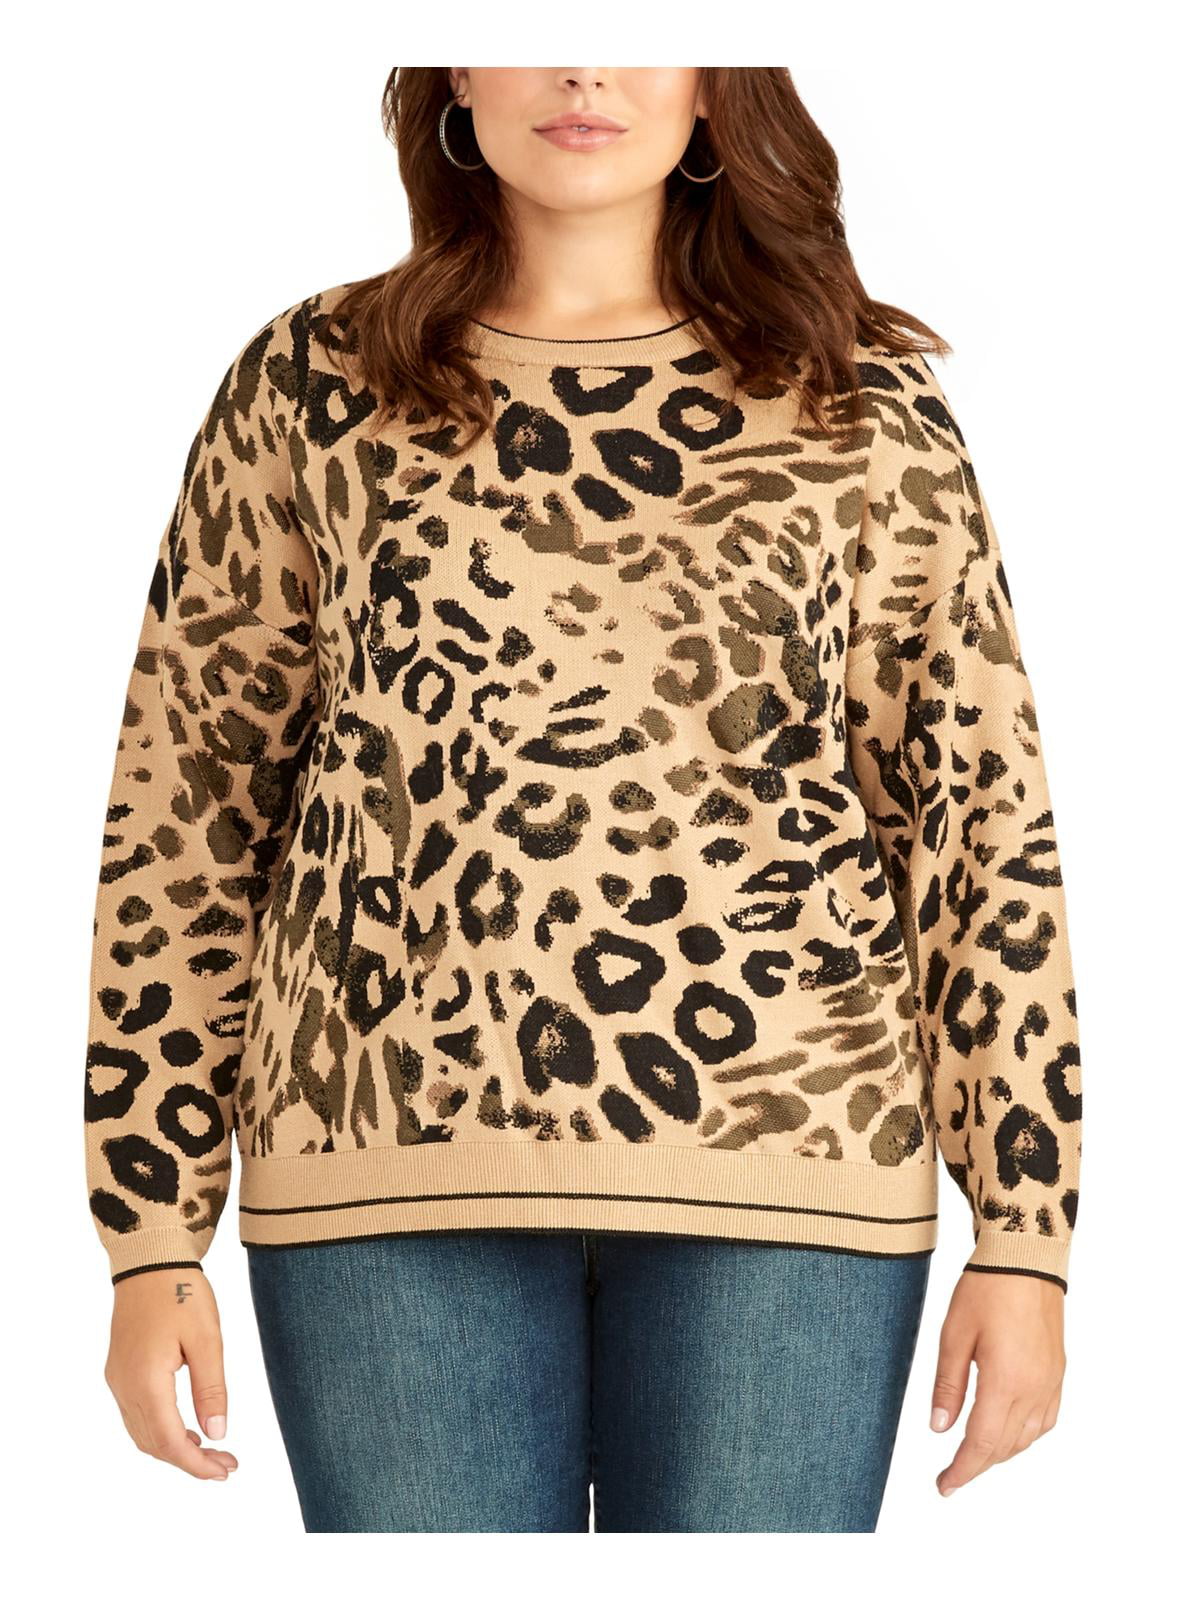 1X, Leopard INC International Concepts Women's Plus Size Cold-Shoulder Sweater